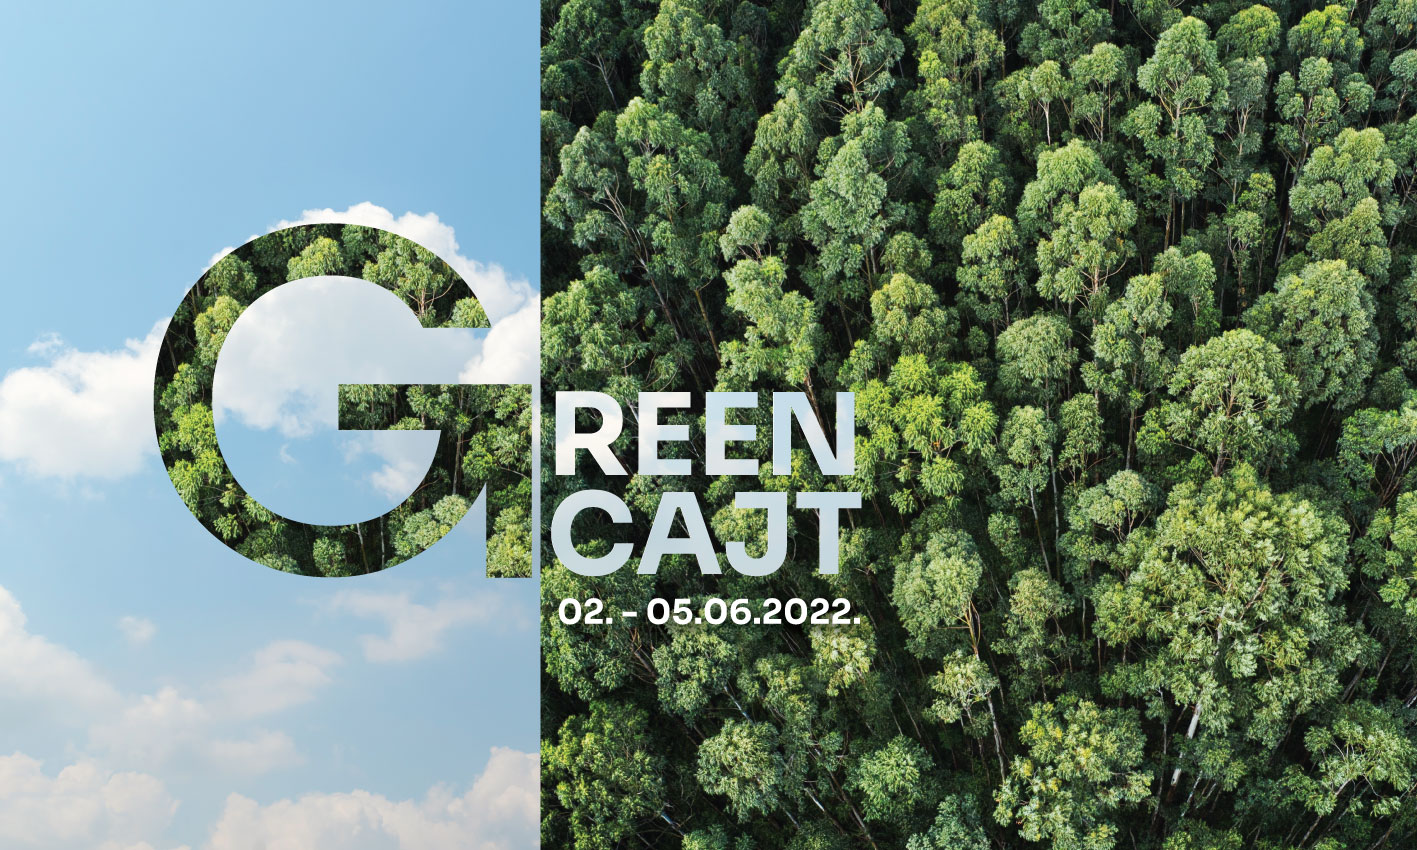 Greencajt festival 2022